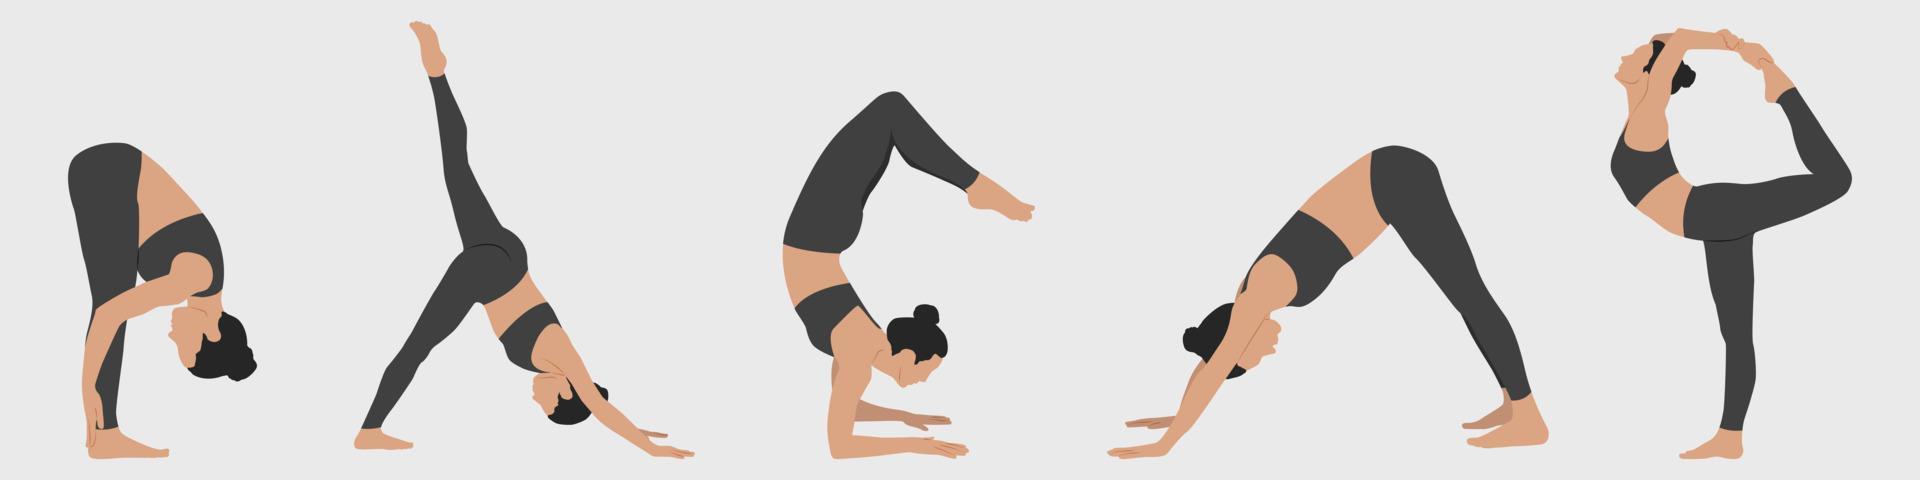 Set mit Frauen, die Yoga machen. Yoga-Positionen. Frauen praktizieren Yoga. vektorillustration im minimalistischen stil. vektor